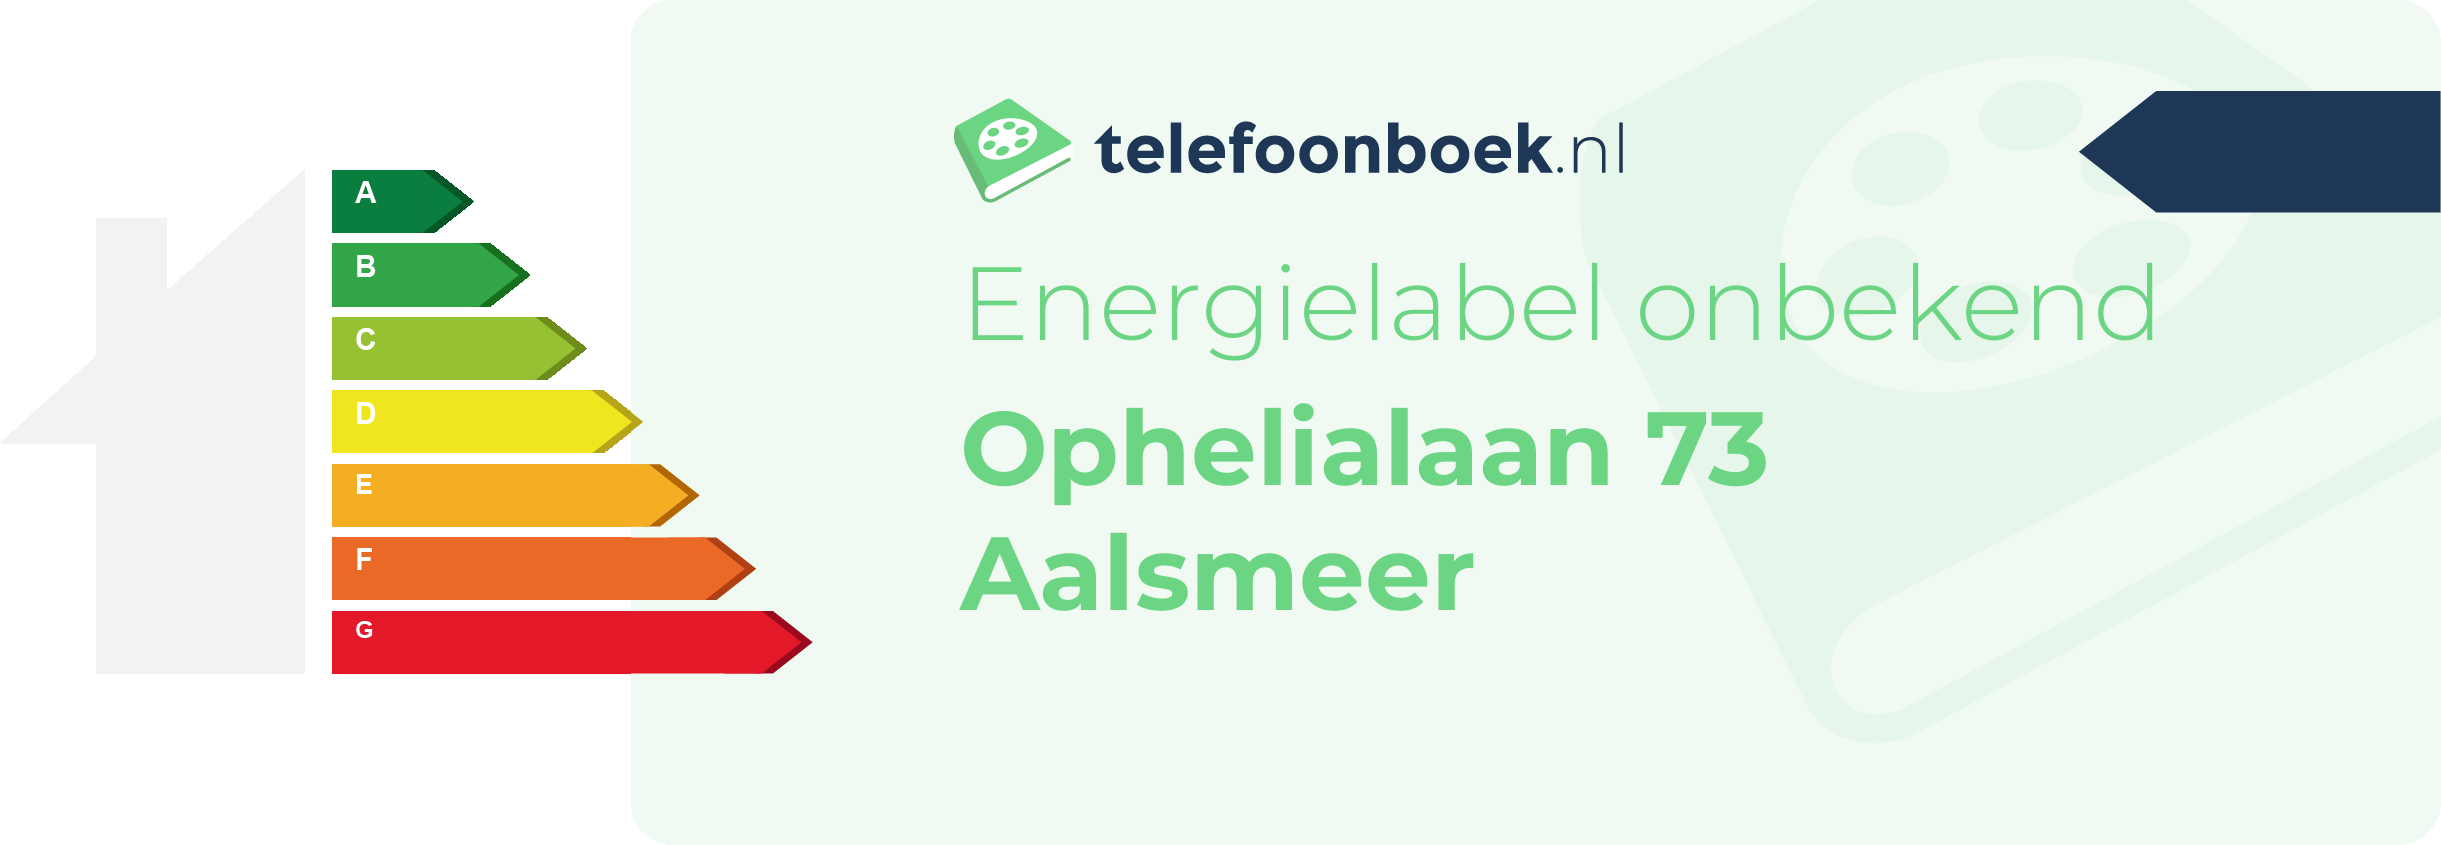 Energielabel Ophelialaan 73 Aalsmeer